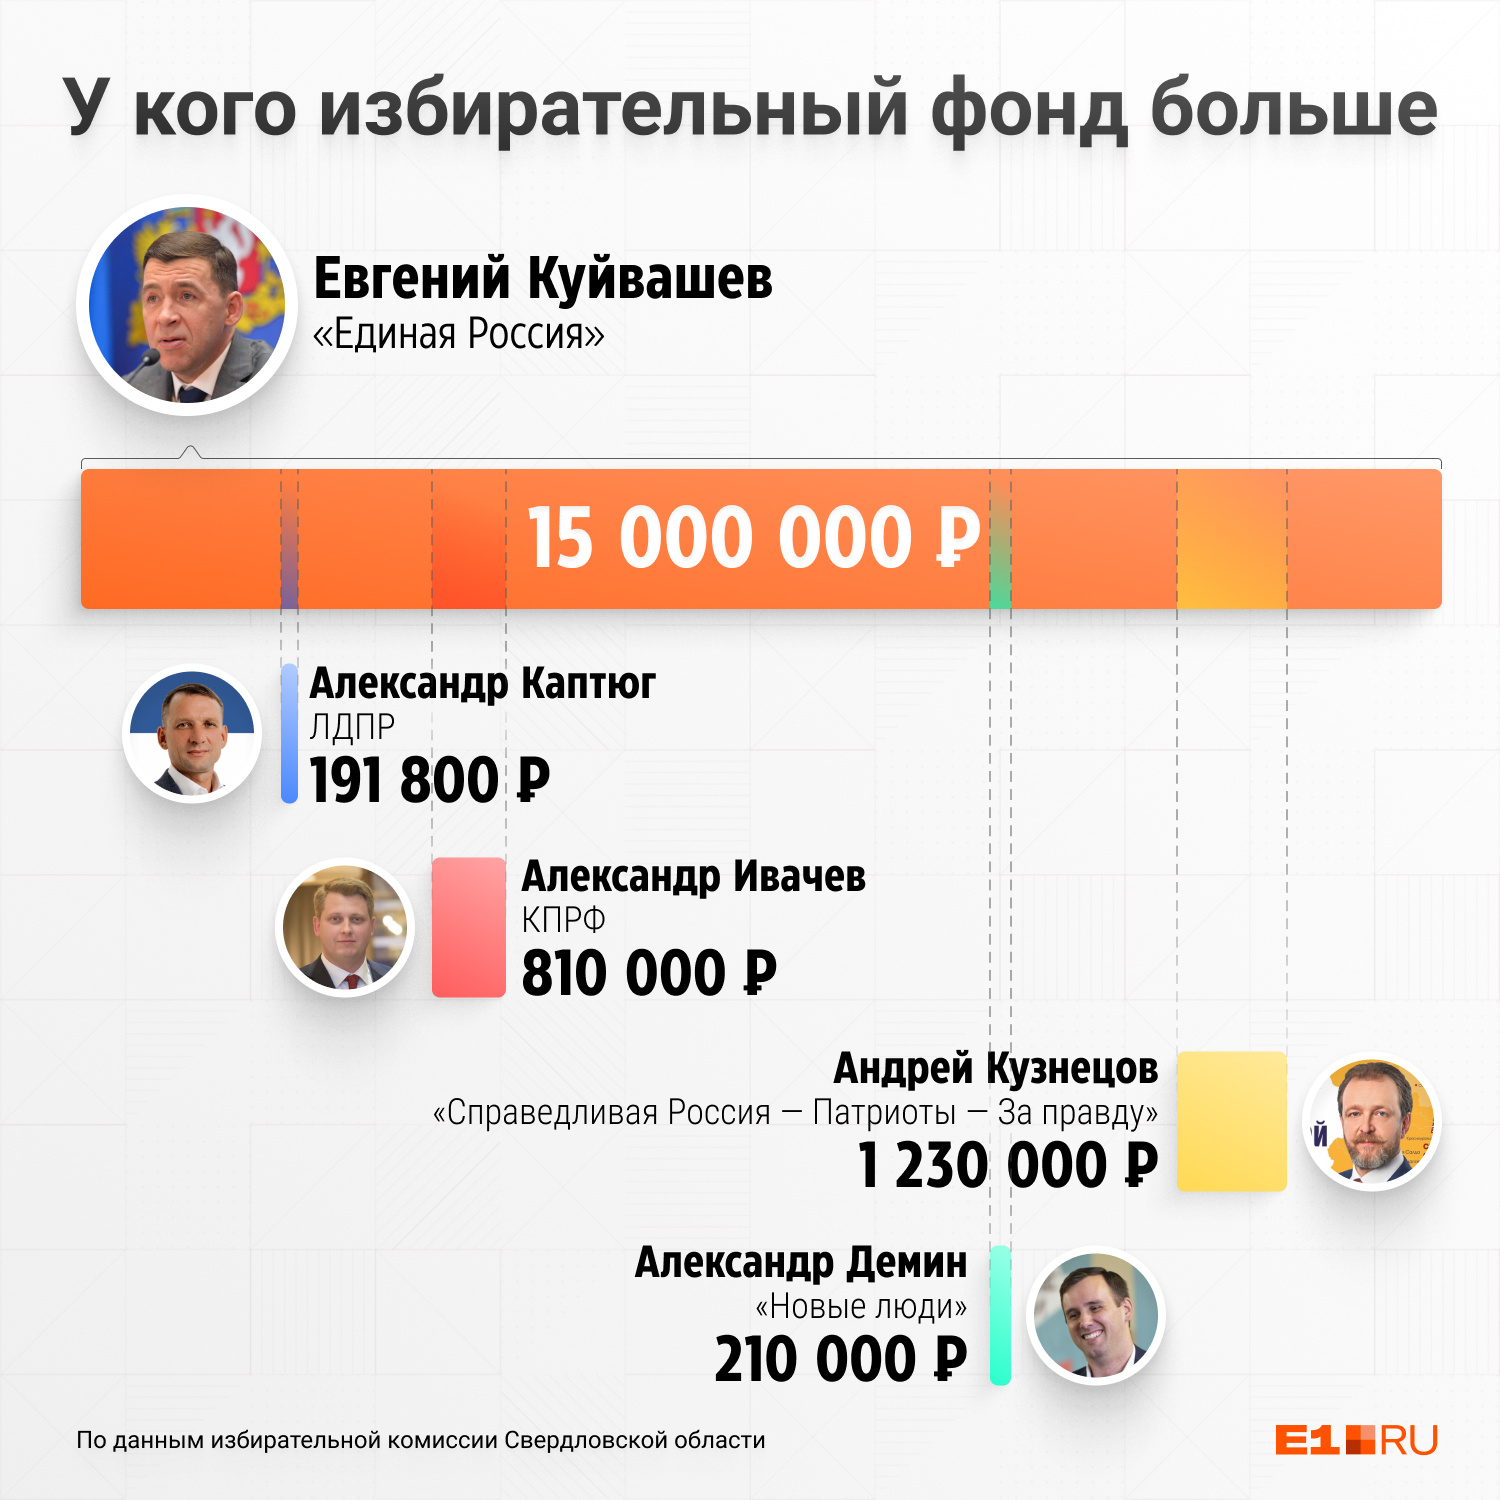 Соперники Евгения Куйвашева не стали разбрасываться деньгами ради этих выборов